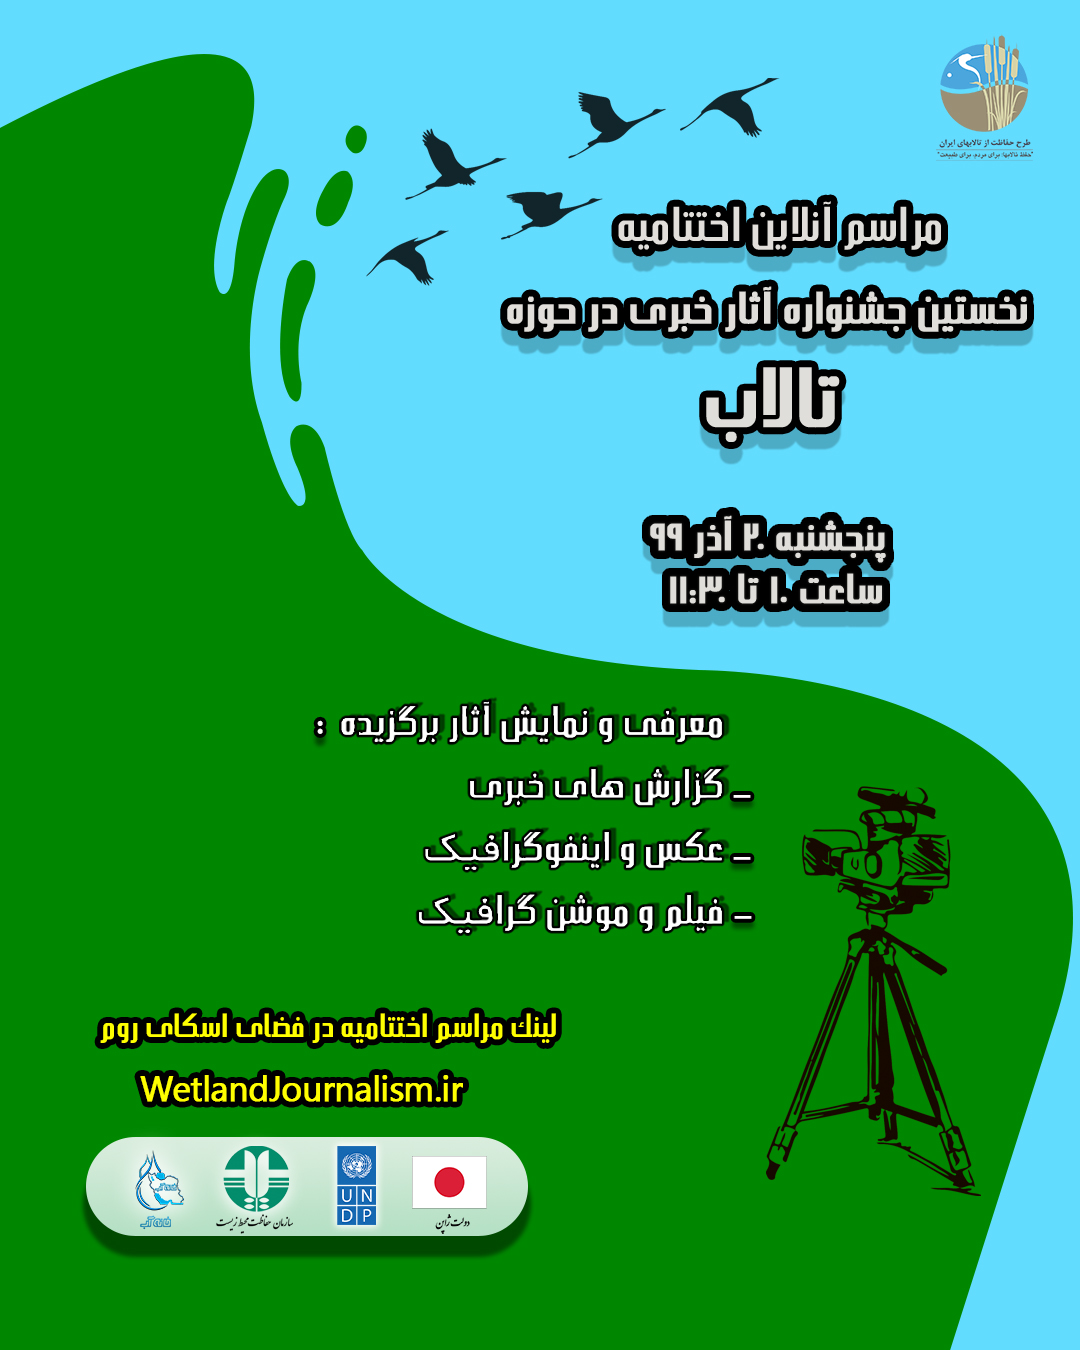 نخستین جشنواره آثار خبری برای فعالین خبر و رسانه در حوزه آب و تالاب برگزار شد